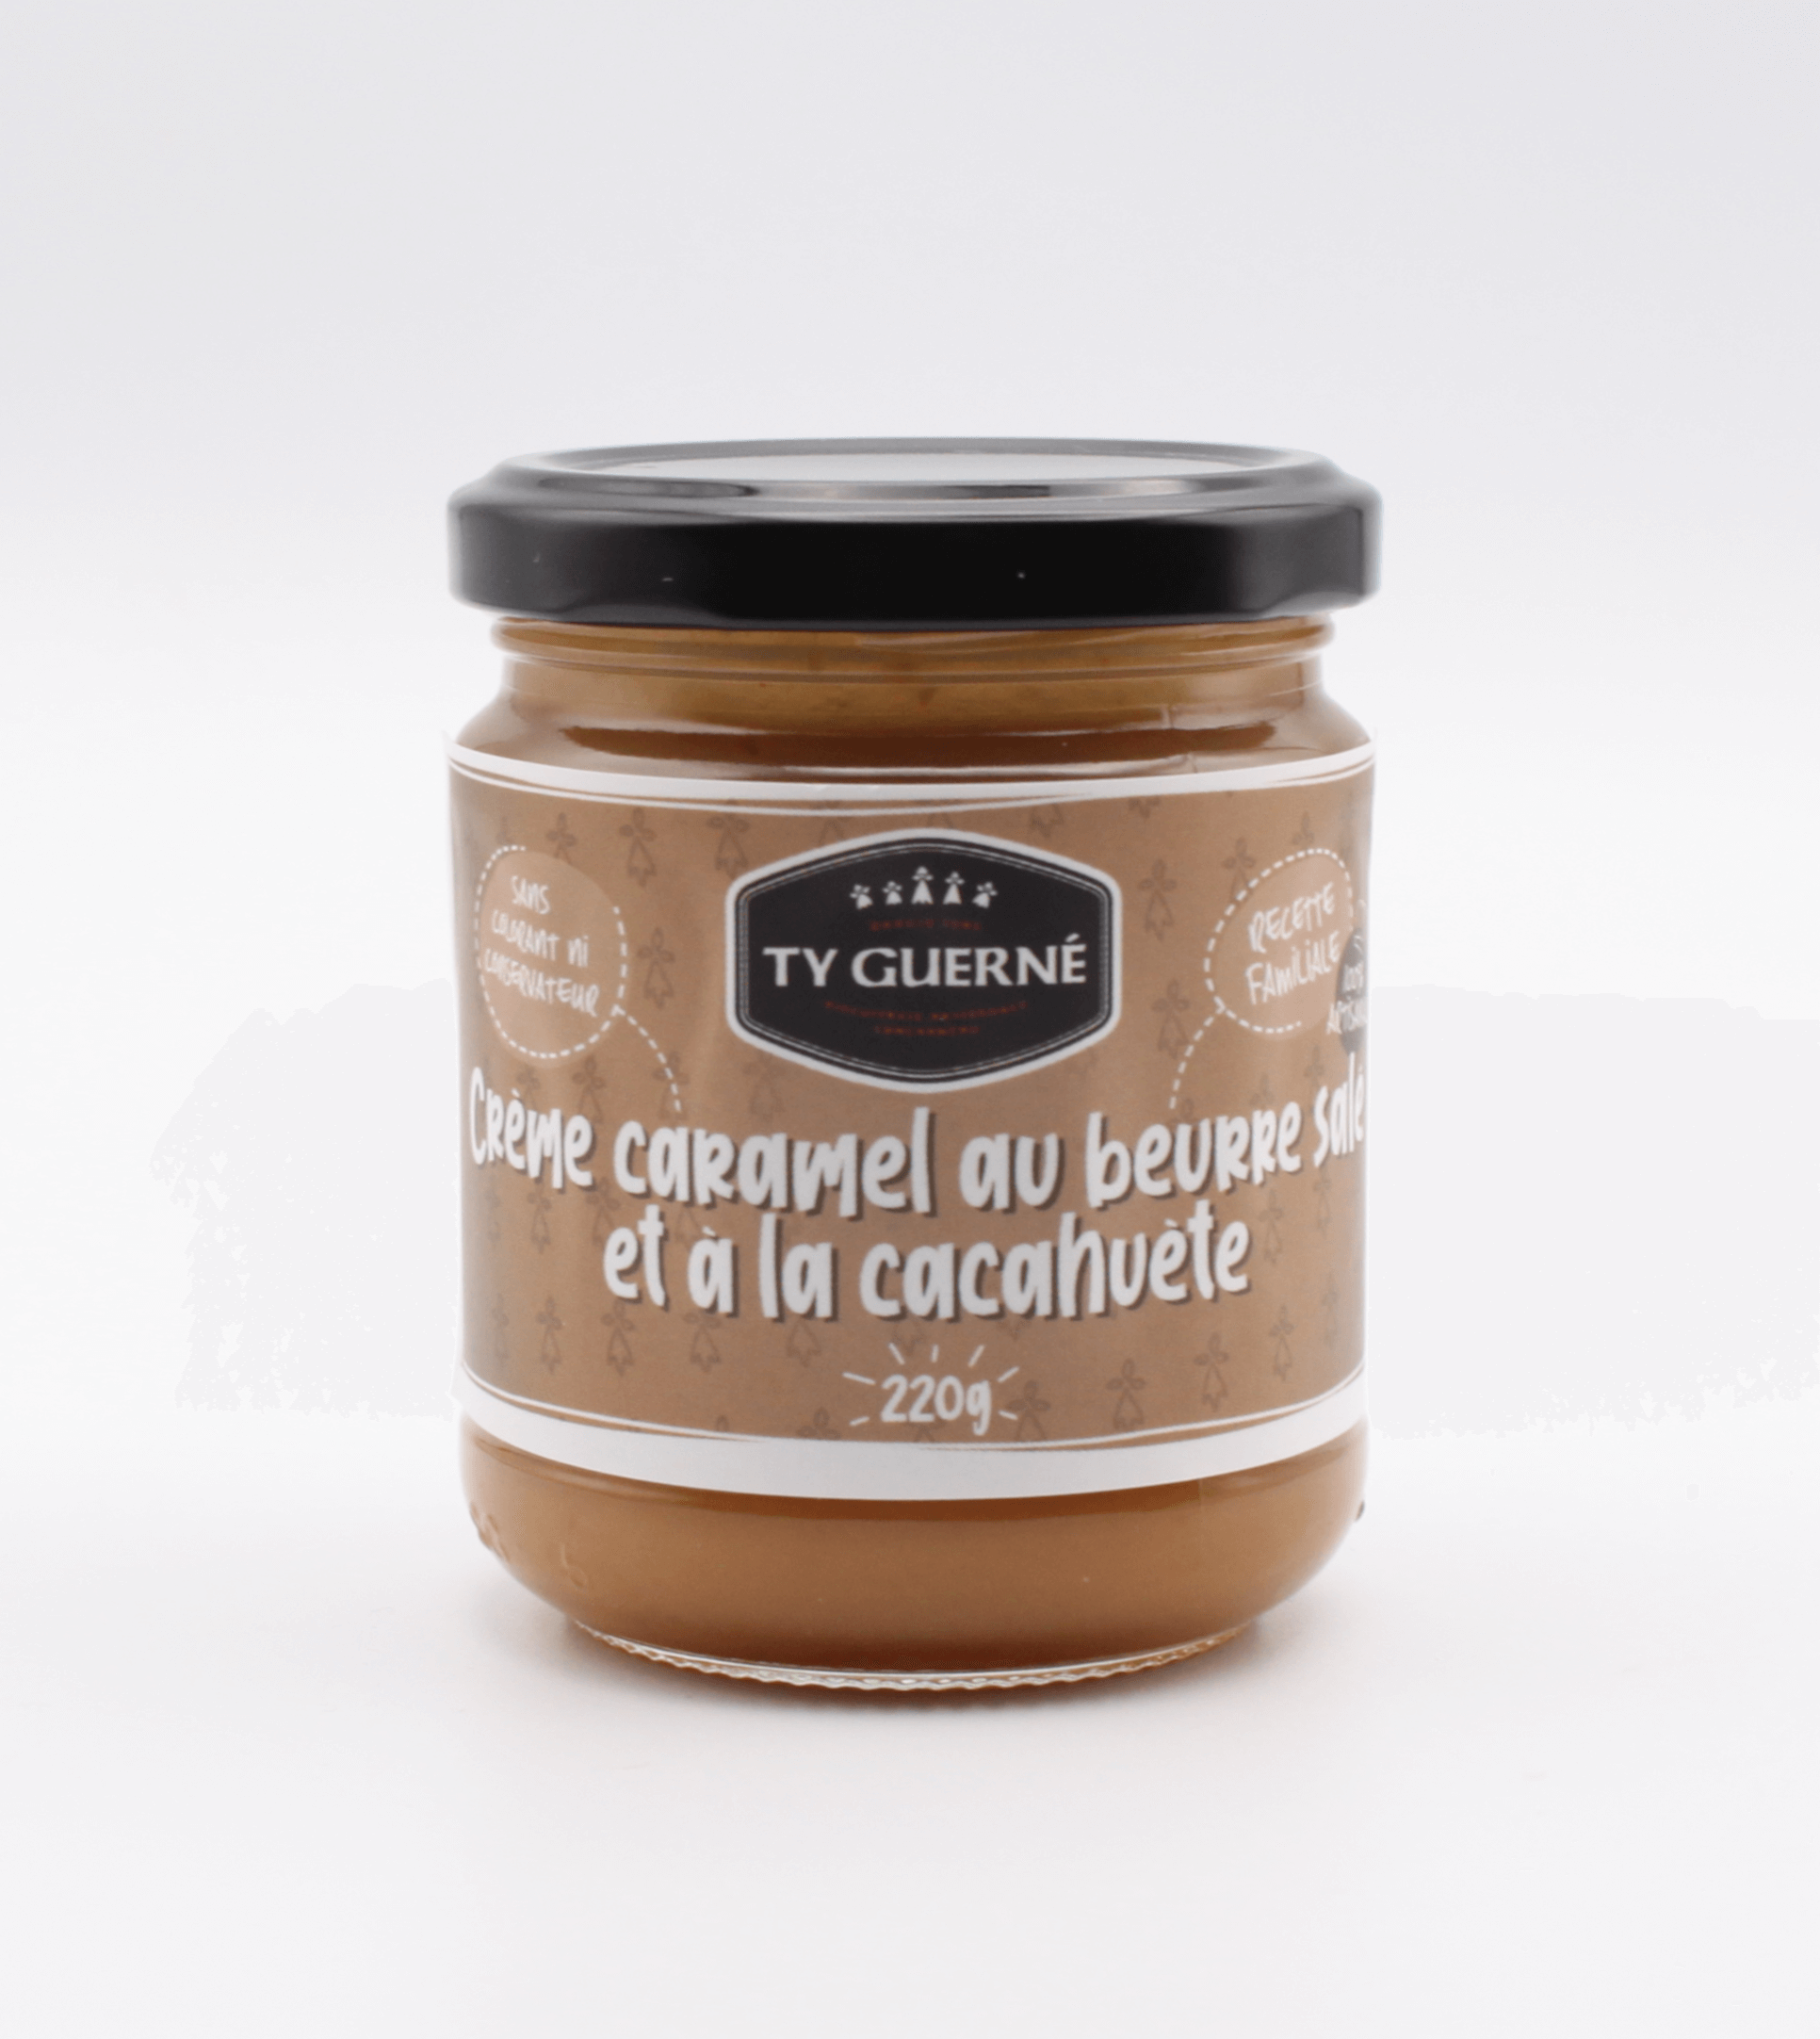 Caramels au beurre salé 150g - Ty Guerné